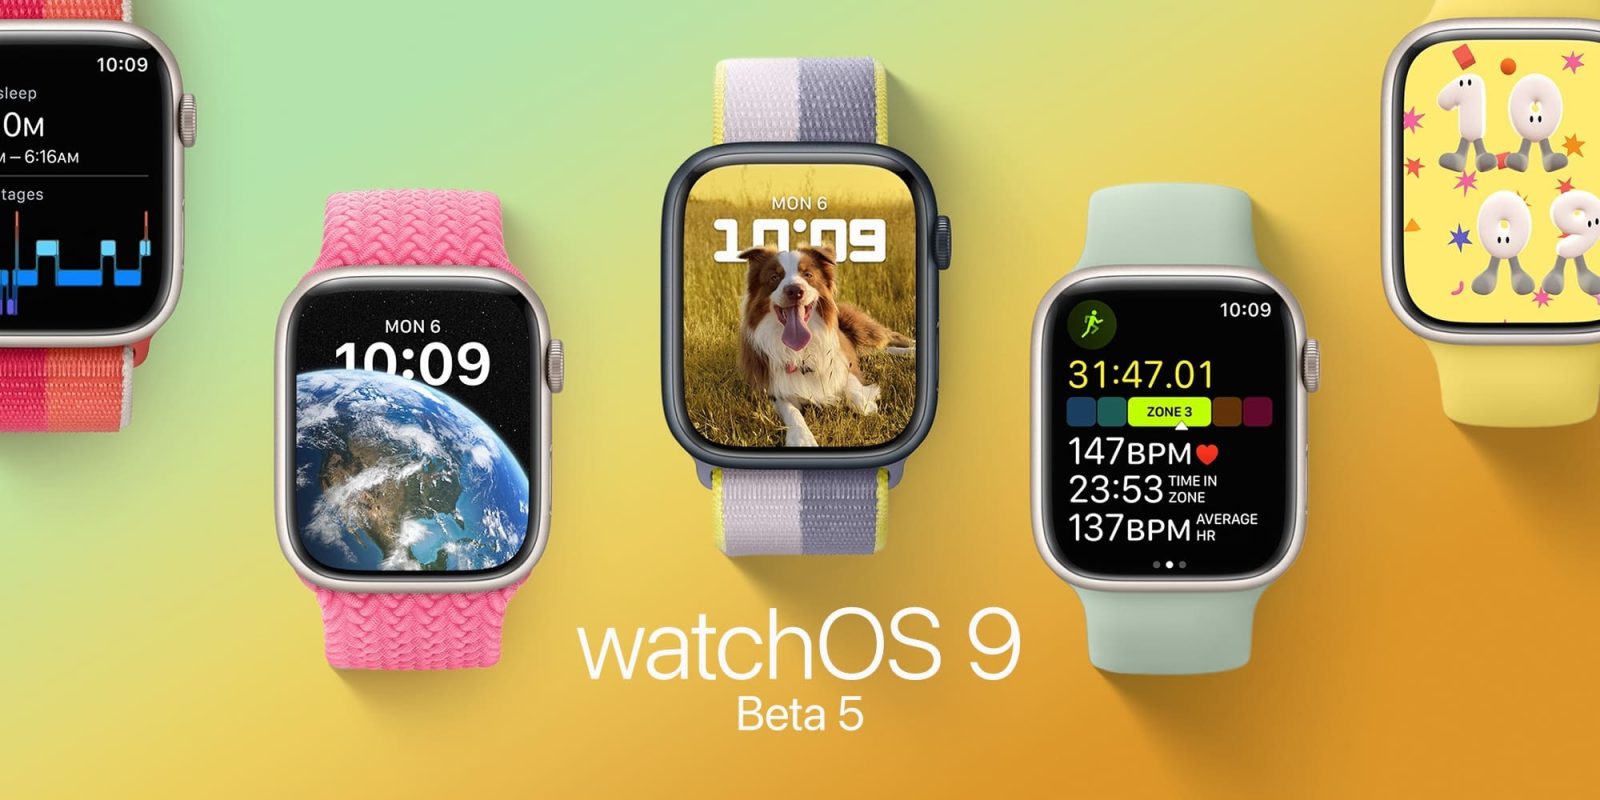 watchOS 9 beta 5